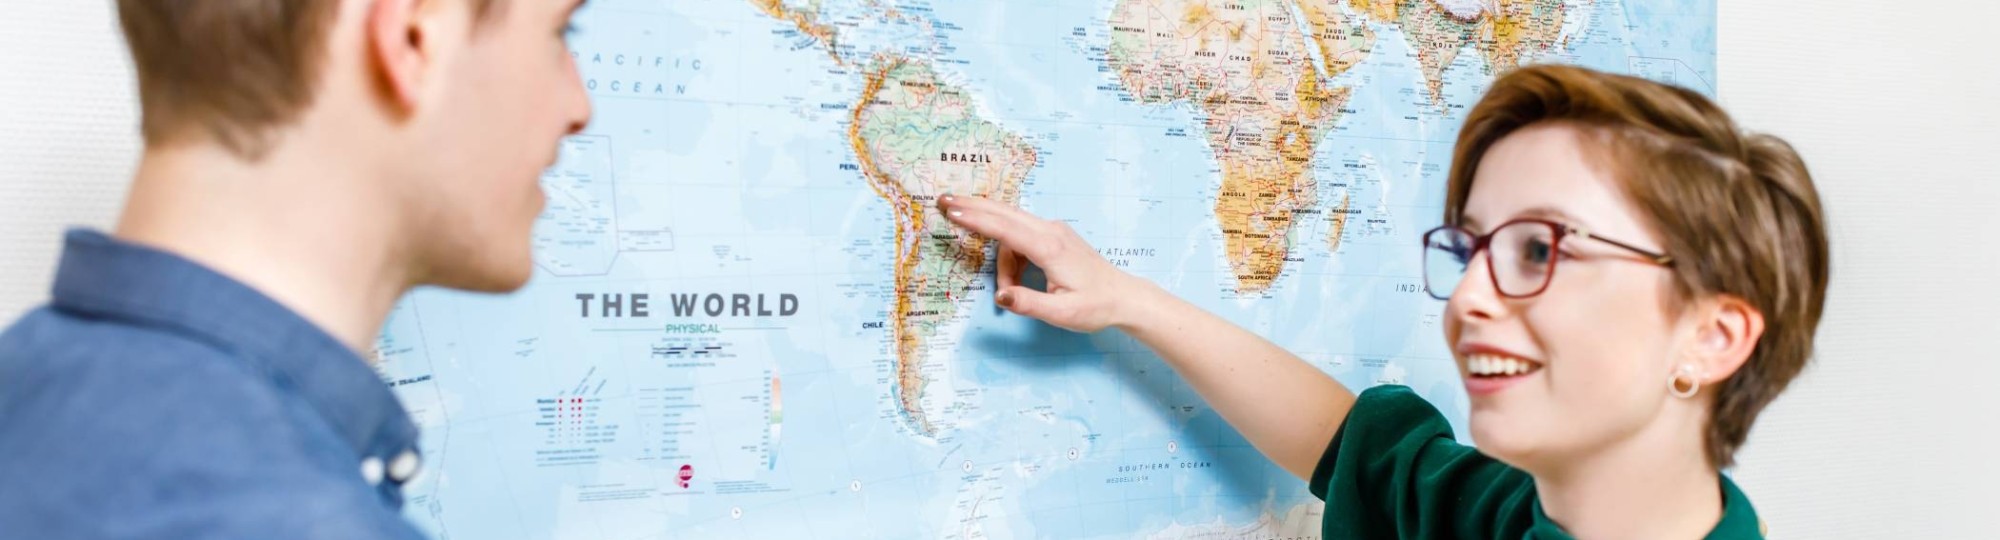 Studente Leraar Aardrijkskunde wijst Zuid-Amerika aan op de wereldkaart die aan de muur hangt.